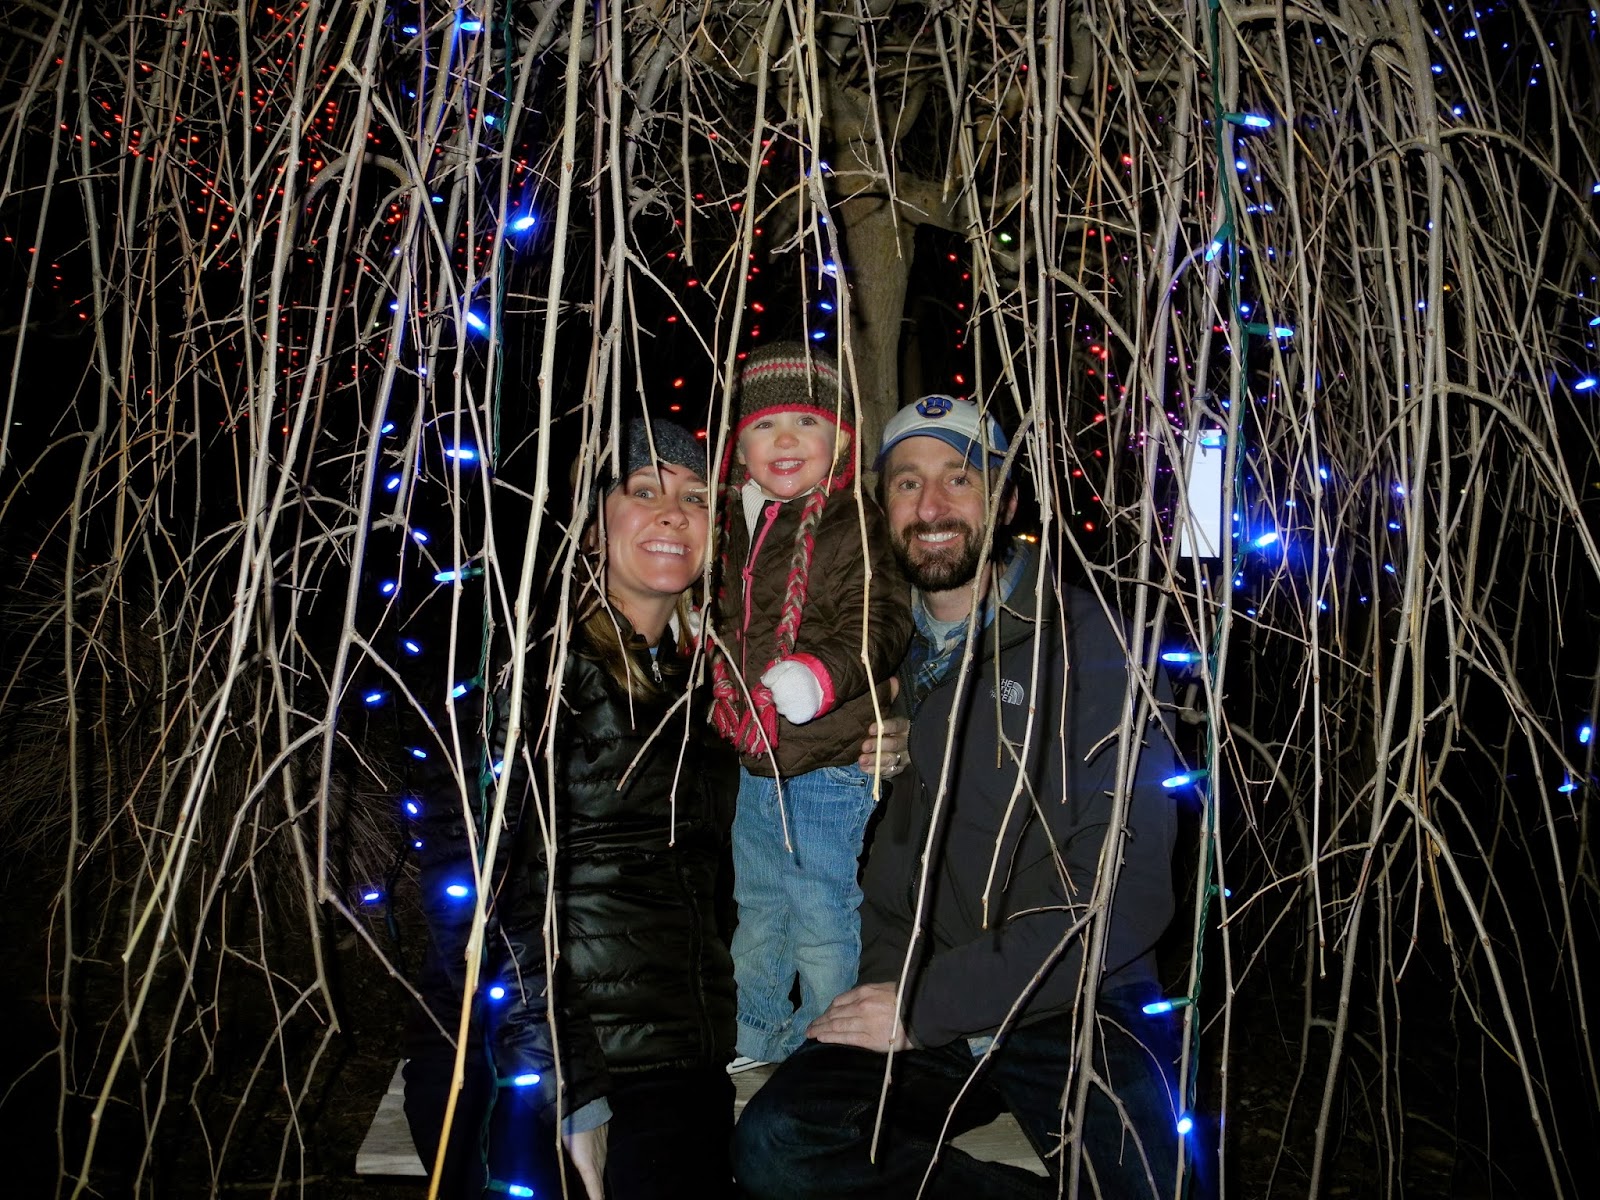 Berken Family: Christmas lights are 